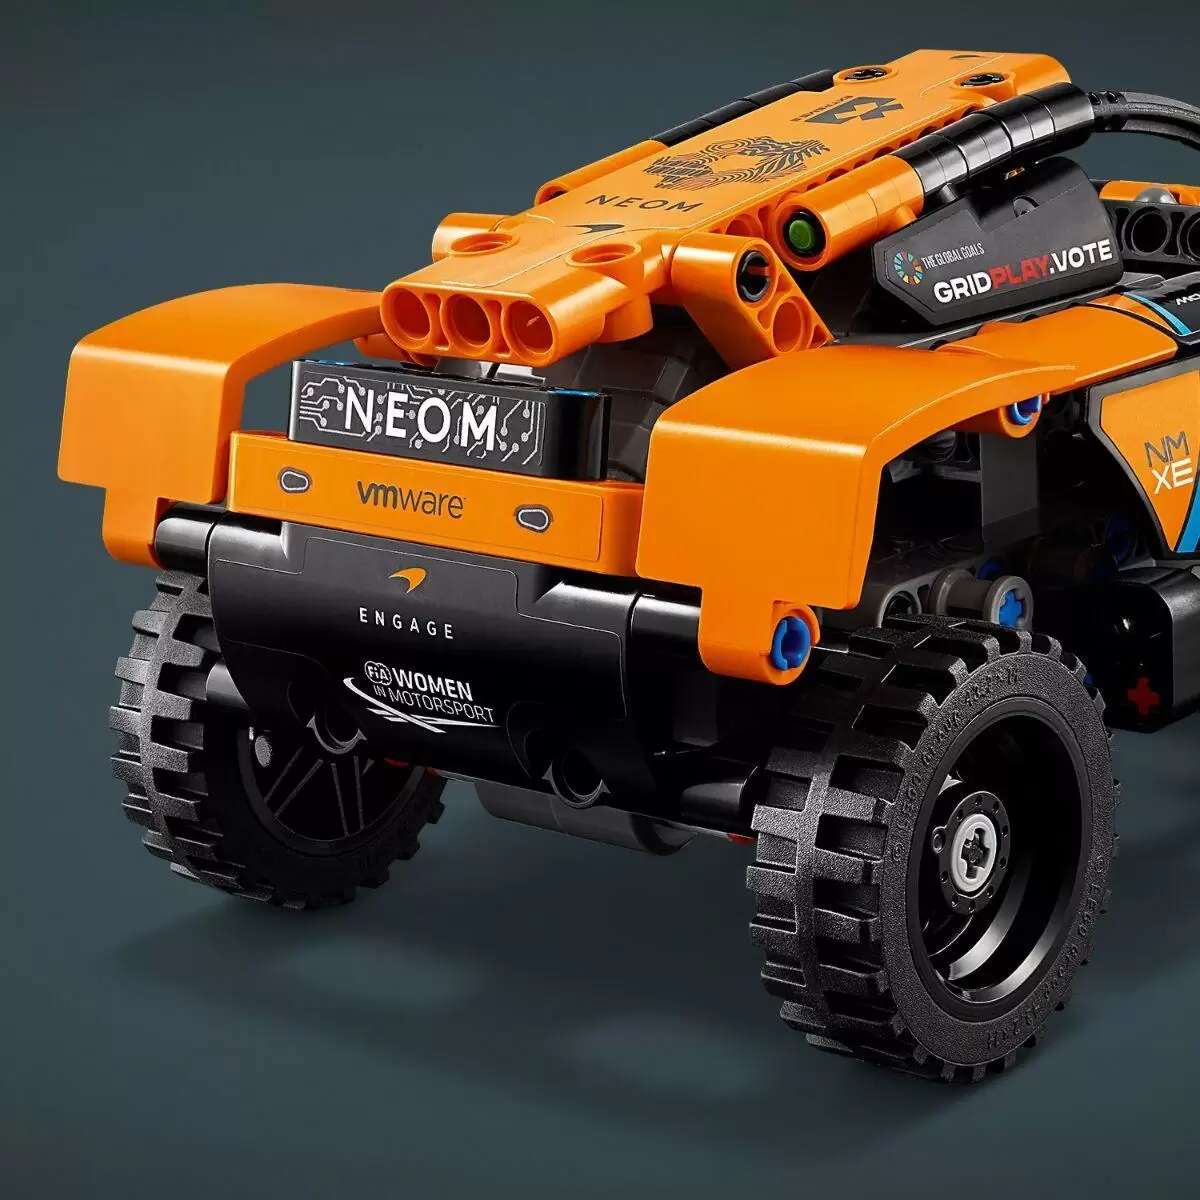 Конструктор LEGO Technic Гоночный автомобиль NEOM McLaren Extreme E